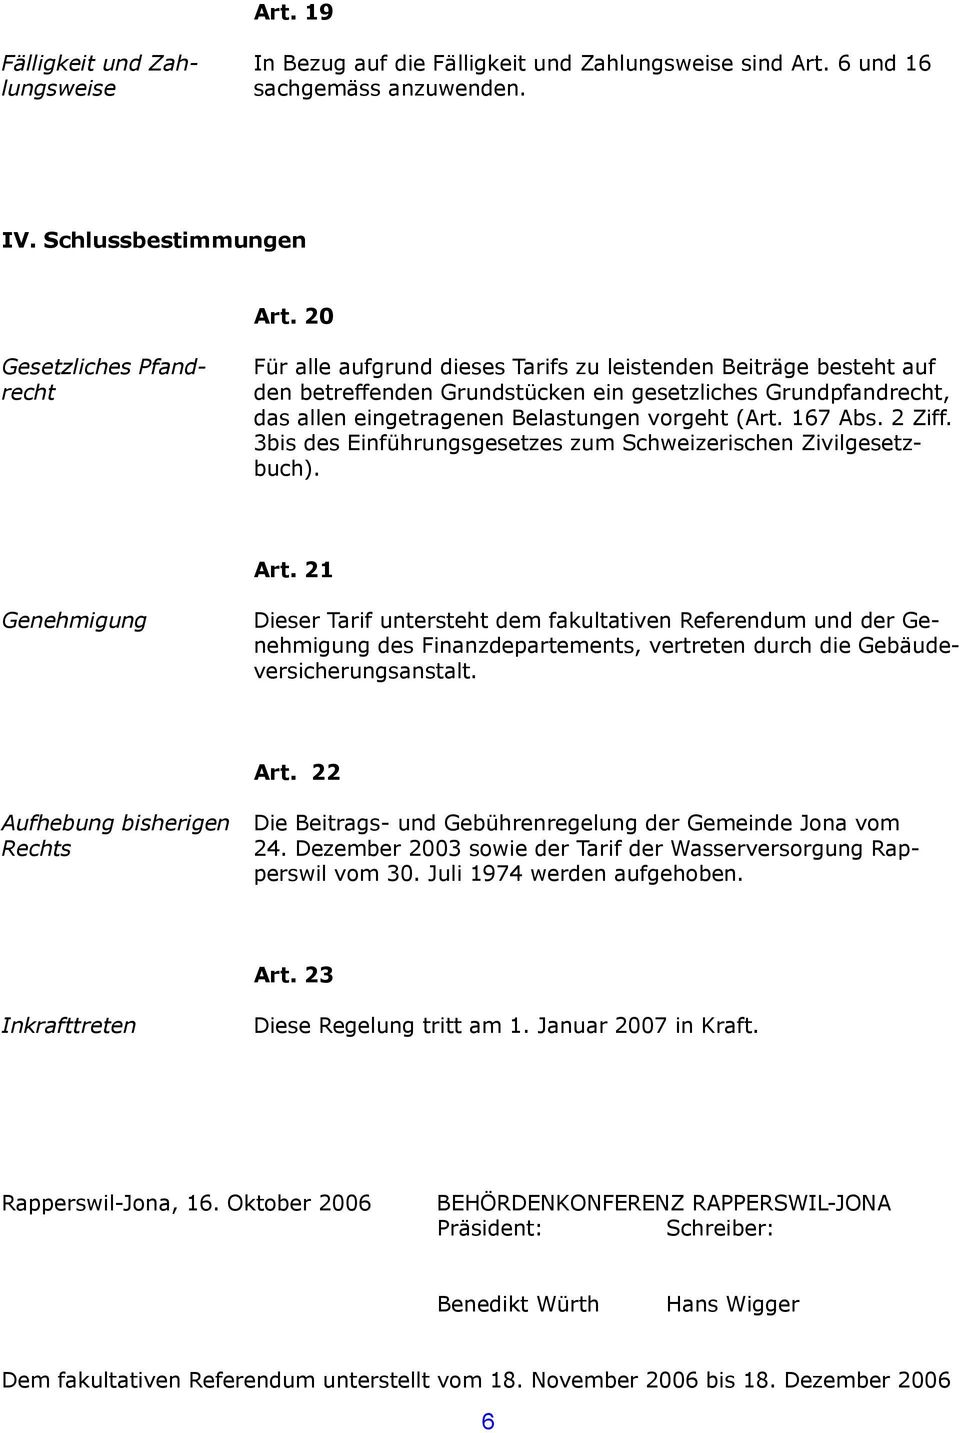 vorgeht (Art. 167 Abs. 2 Ziff. 3bis des Einführungsgesetzes zum Schweizerischen Zivilgesetzbuch). Art.